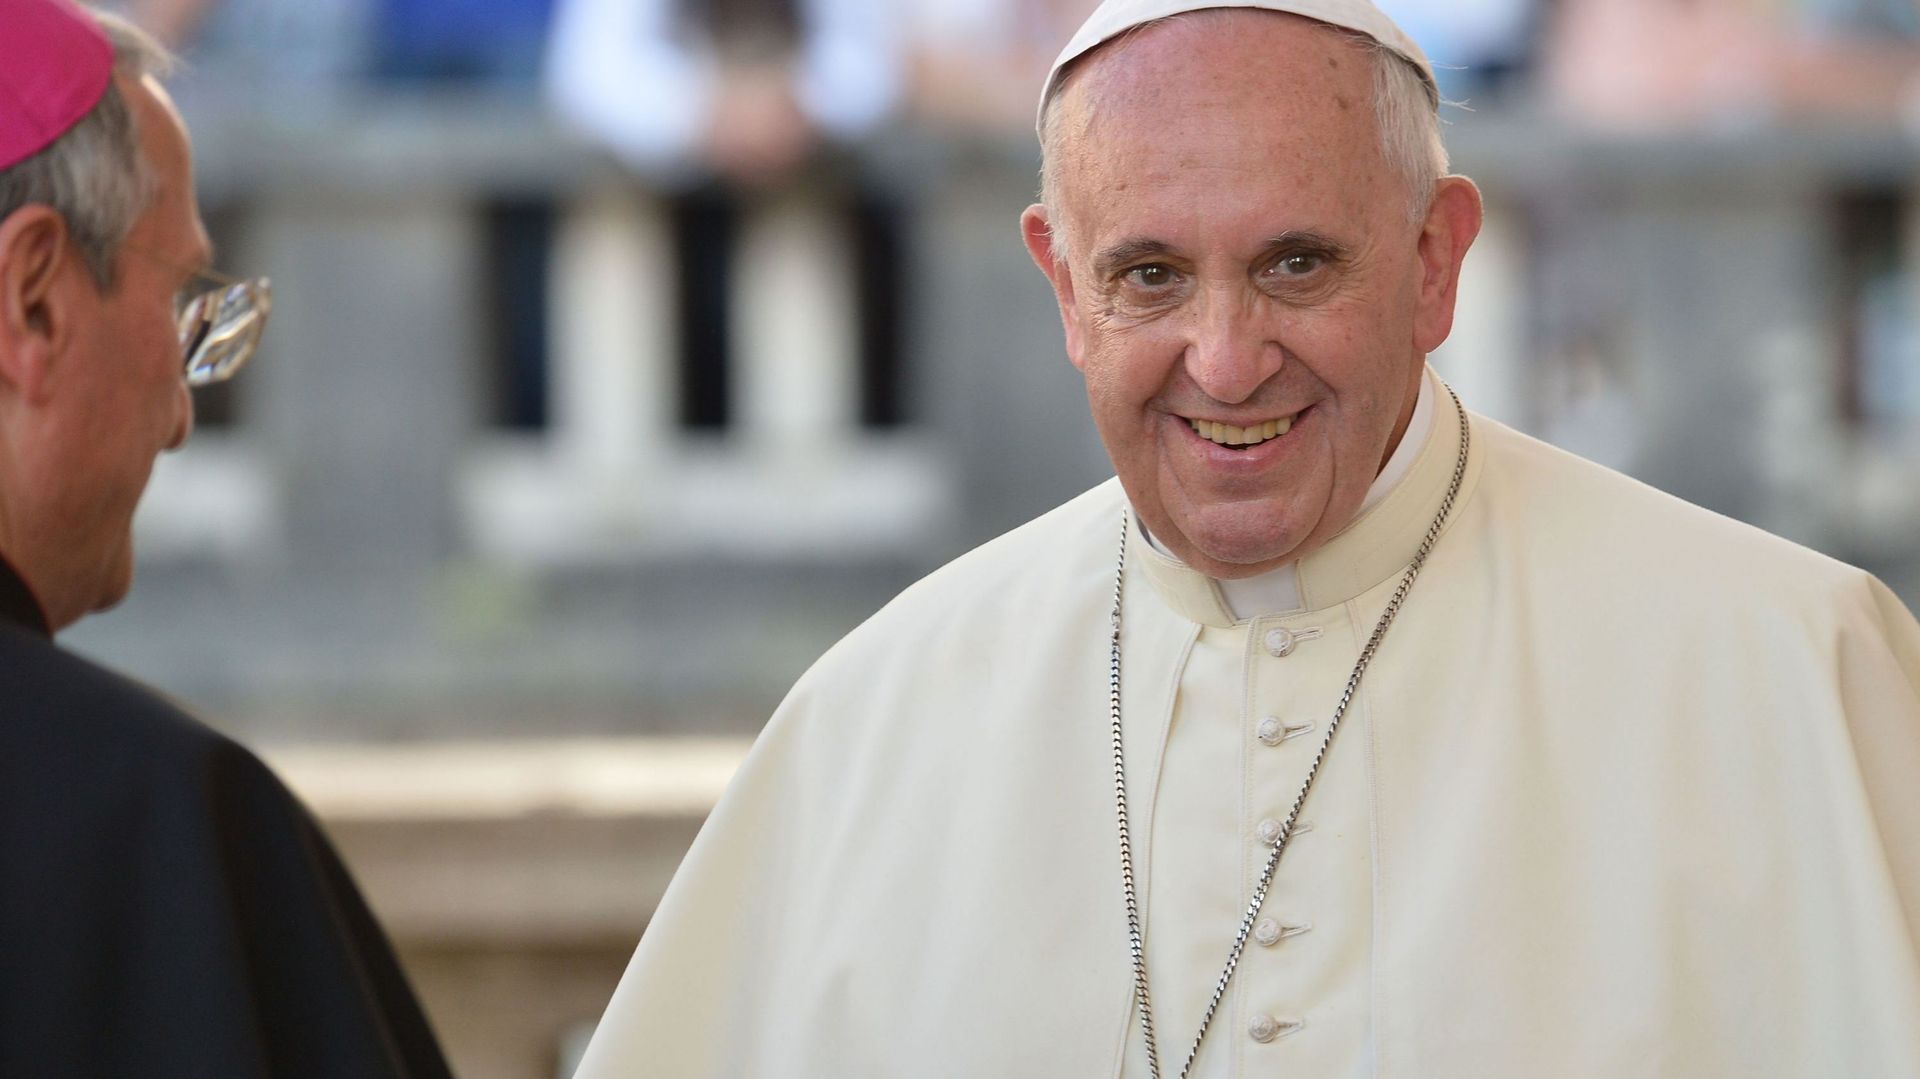 selon-le-pape-la-pedophilie-concerne-2-des-pretres-eveques-et-cardinaux